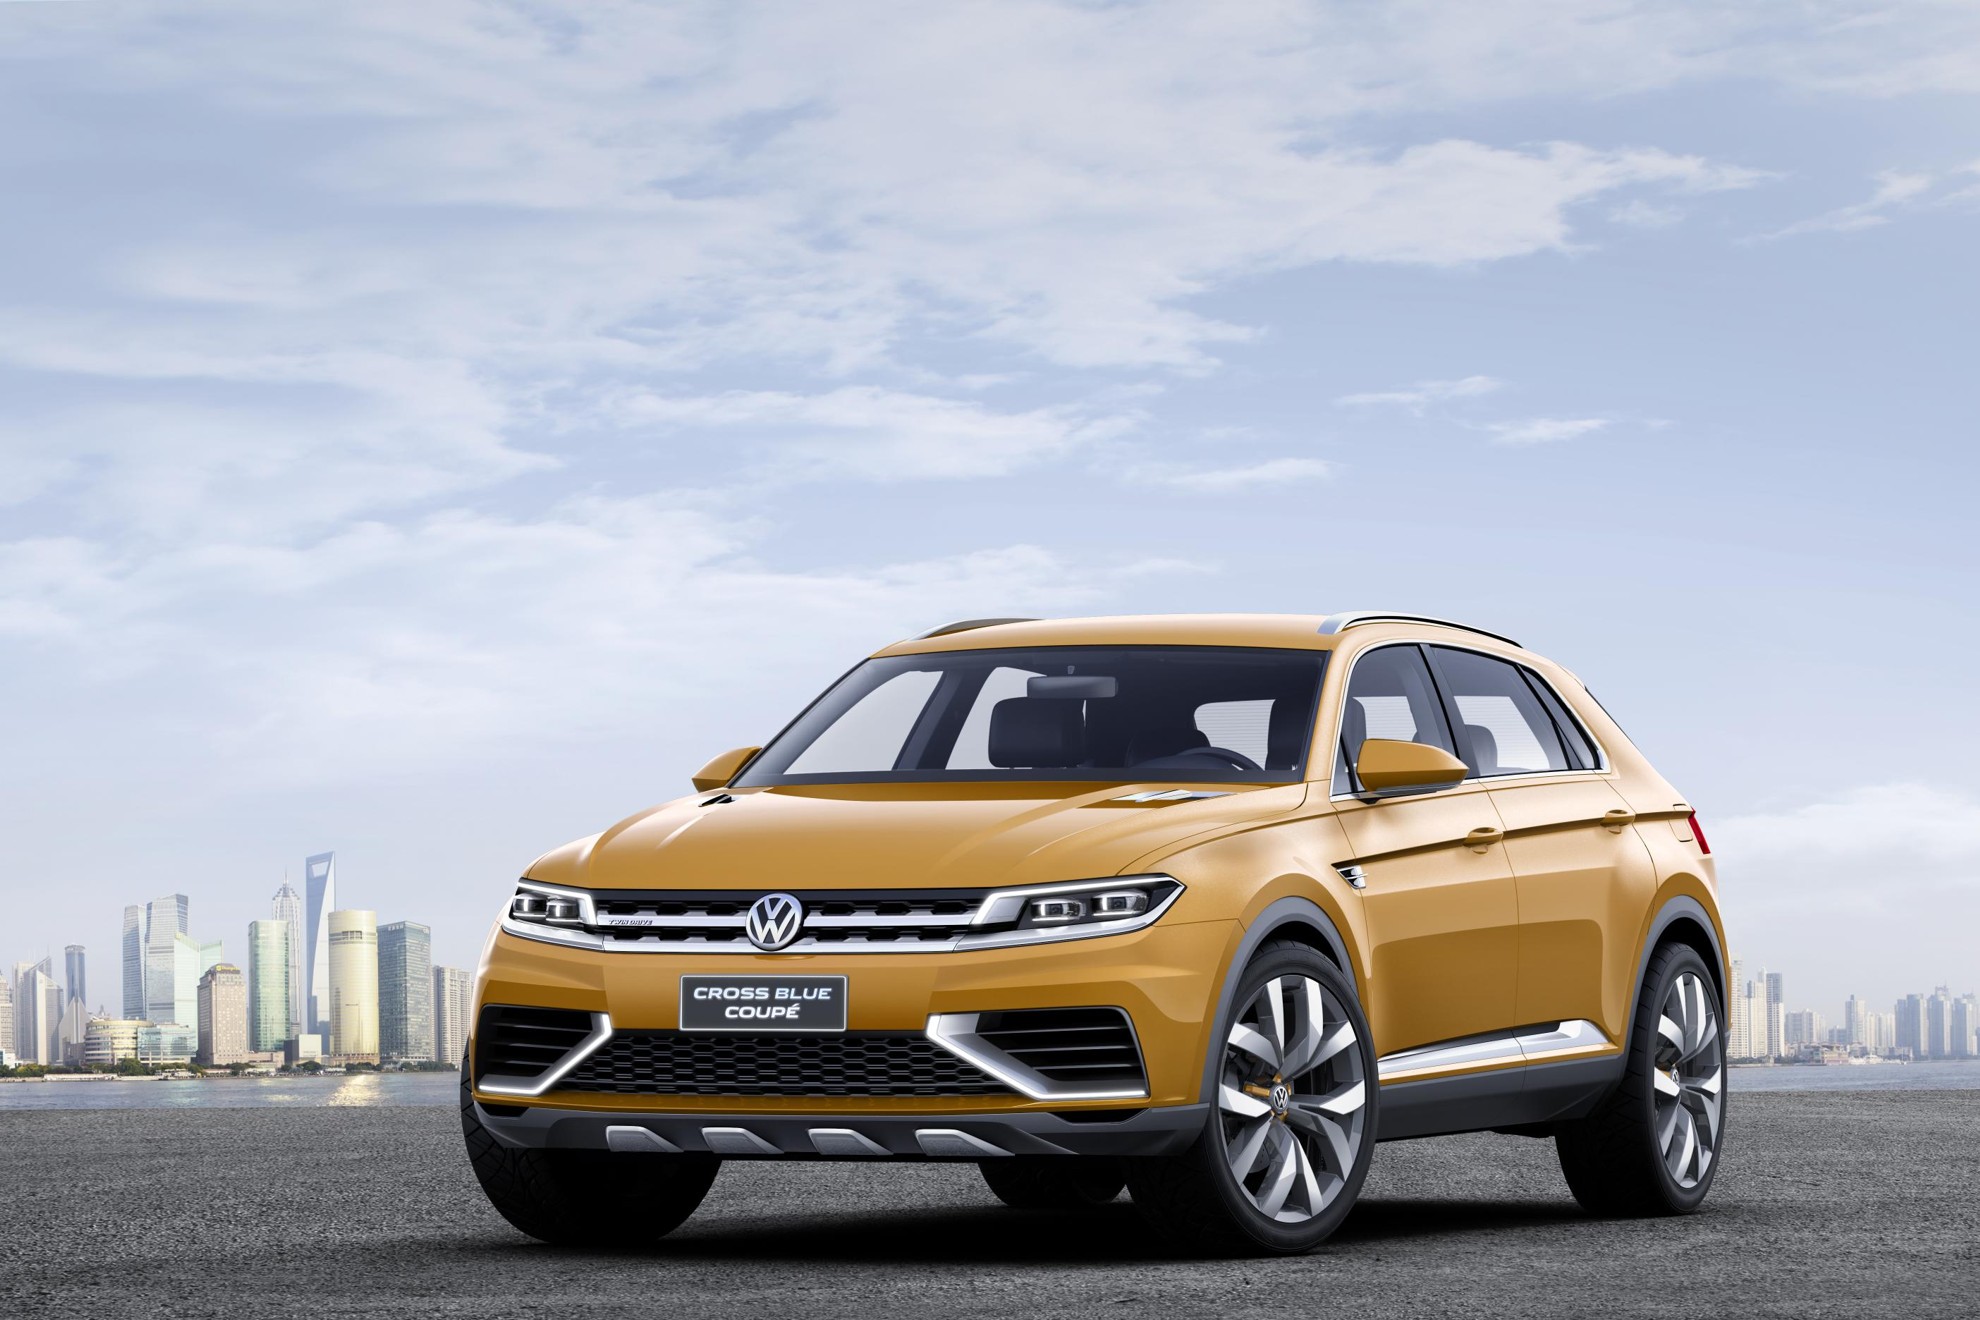 Volkswagen CrossBlue Coupé concept – Shanghai Auto Show 2013